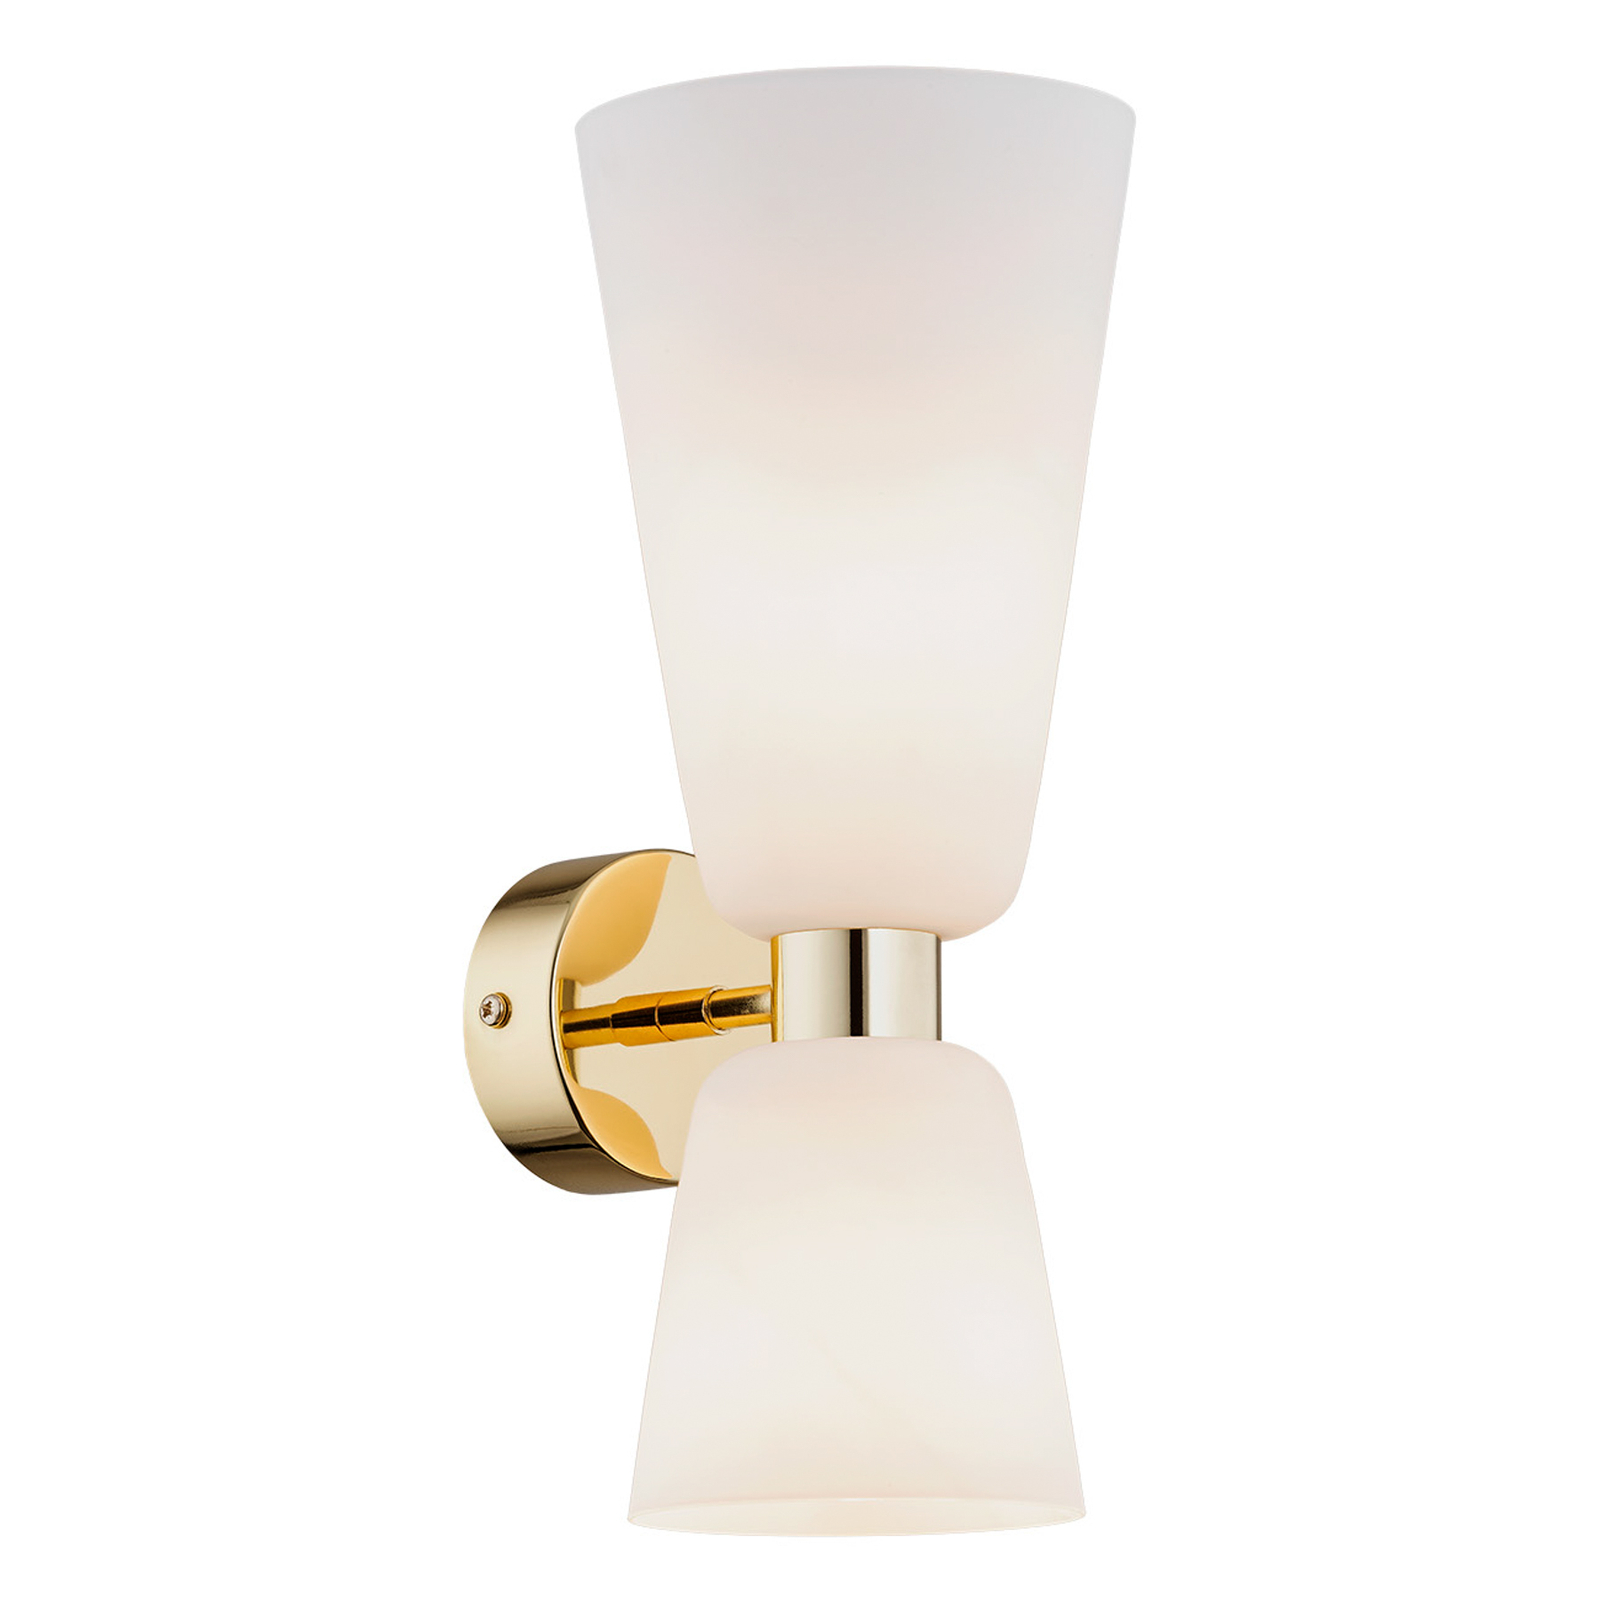 Rita wall light, two-bulb up/down matt opal/brass